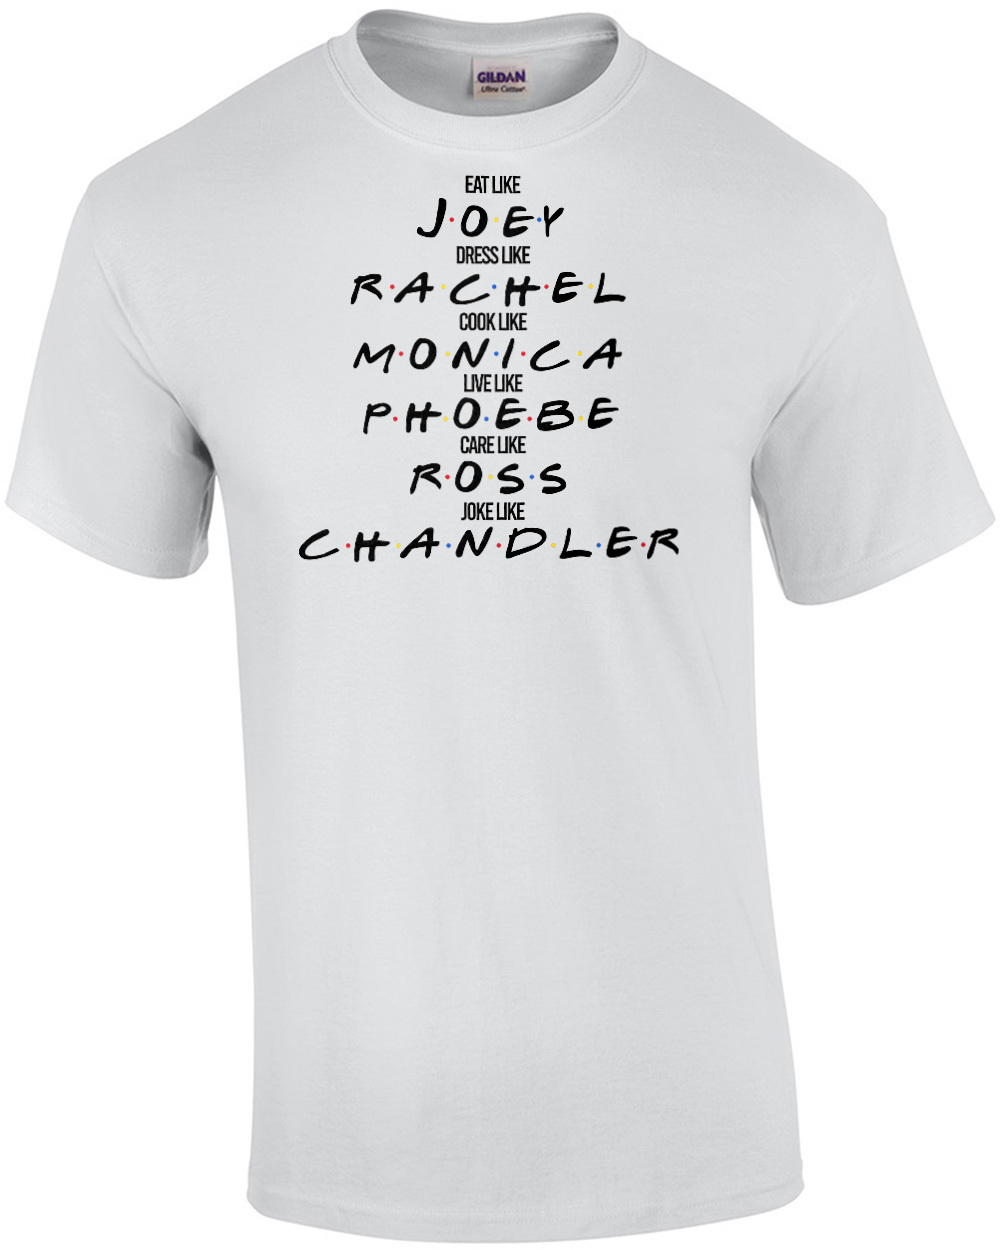 Eat like Joey - Dress like Rachel - Cook like Monica - Funny Friends T-Shirt  - 90's T-Shirt